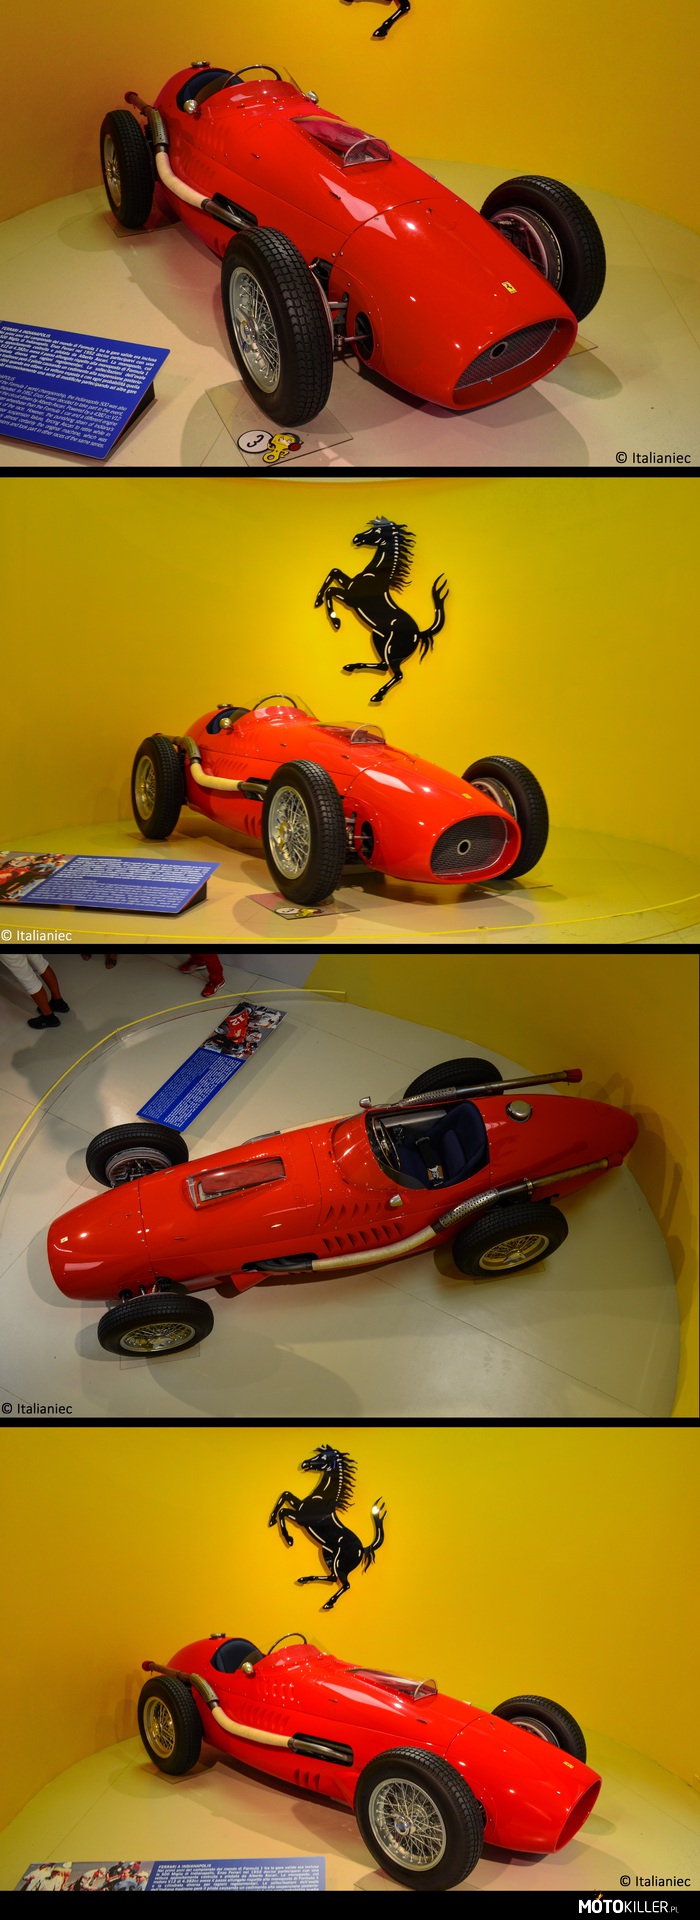 Ferrari 375 Indy – W początkowych latach mistrzostw świata F1, jeden z wyścigów obejmował Indianapolis 500. Enzo Ferrari w 1952 roku zdecydował w niej uczestniczyć  ze specjalnie zbudowanym  bolidzie prowadzonym przez Alberto Ascari. Pojazd miał pod maską silnik V12, zwiększony rozstaw osi i inną pojemność niż normalne bolidy F1 z powodów regulaminu. Rezultat nie należy do najlepszych: przeciążenia na zakrętach spowodowały usterkę tylnego zawieszenia, co zmusiło Ascari do wycofania się z wyścigu z ósmej pozycji. Ferrari się nie poddało i po paru zmianach ponownie uczestniczyła dwa lata później, bez wielkich osiągnięć. 